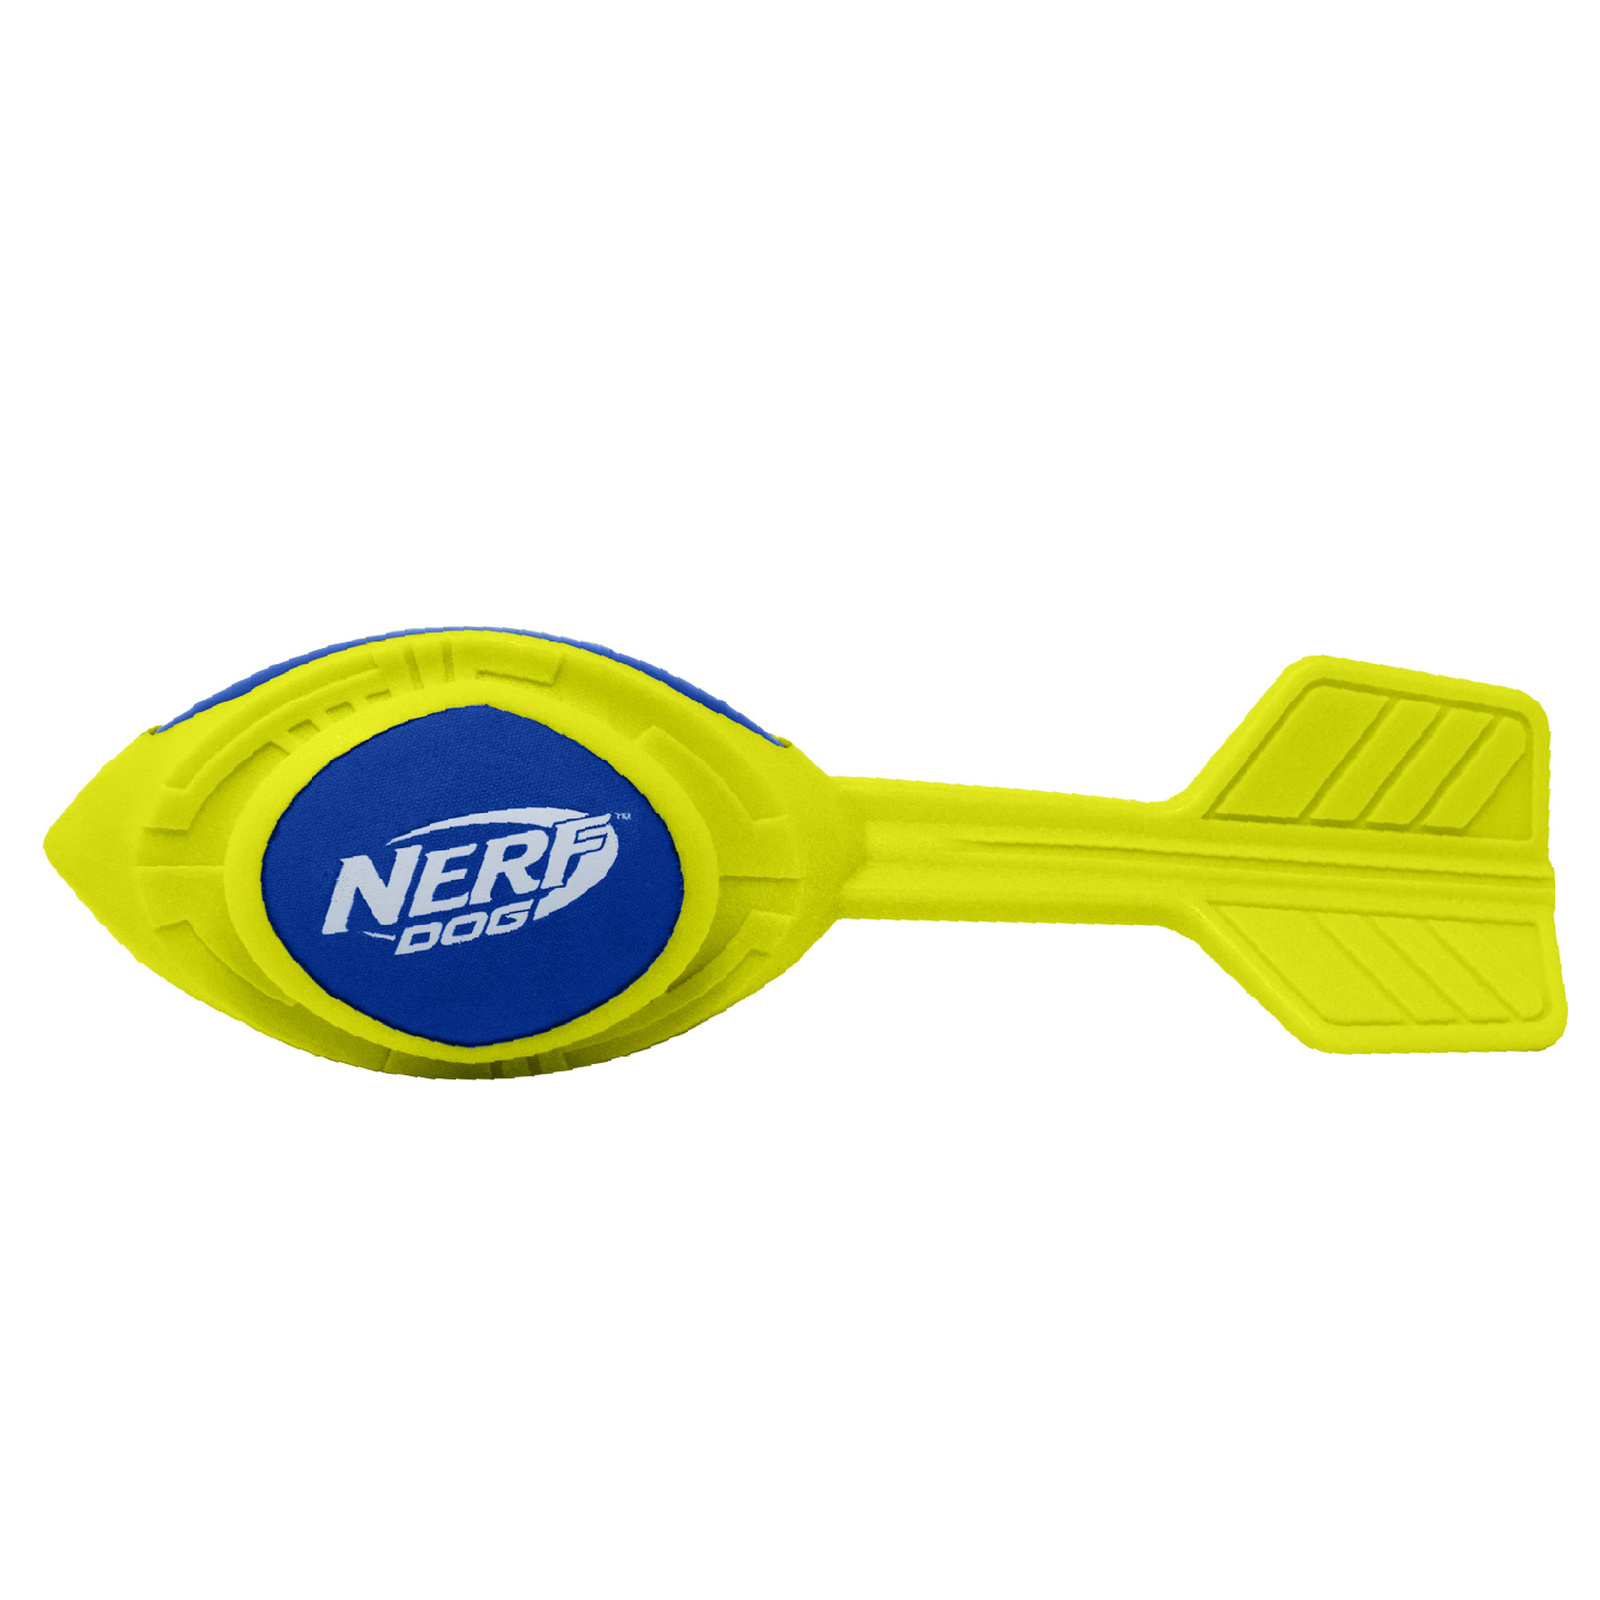 Nerf Nerf игрушка из вспененной резины 30 см (серия Мегатон) (290 г) nerf nerf мяч из вспененной резины и термопластичной резины 14 см серия мегатон синий зеленый 390 г